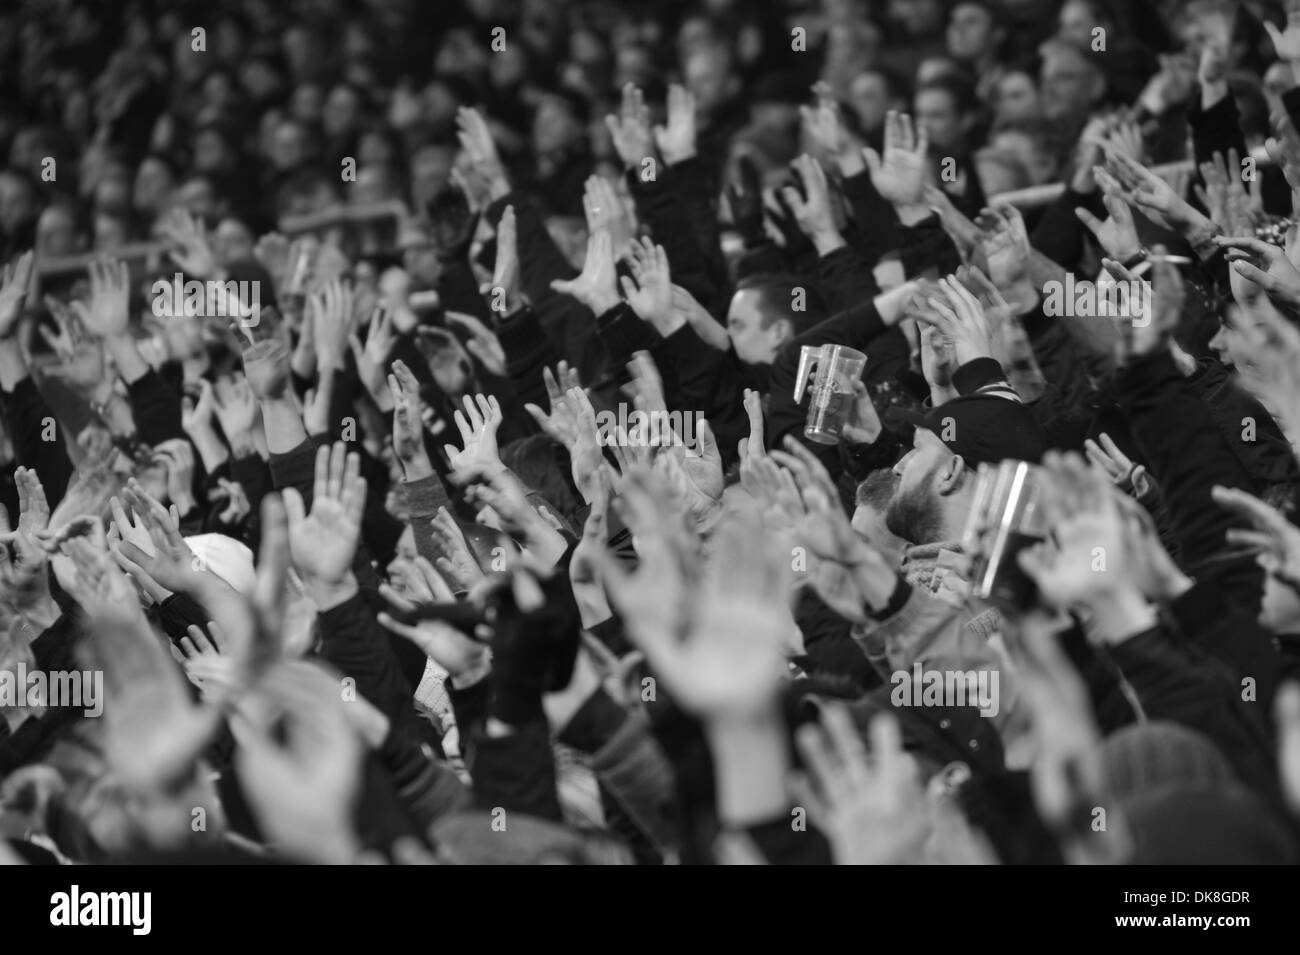 Pauli-Fans in Hochspannung vor Freistoß, Südkurve, Millerntor-Stadion, Hamburg, Deutschland. Nur redaktionelle Nutzung. Stock Photo